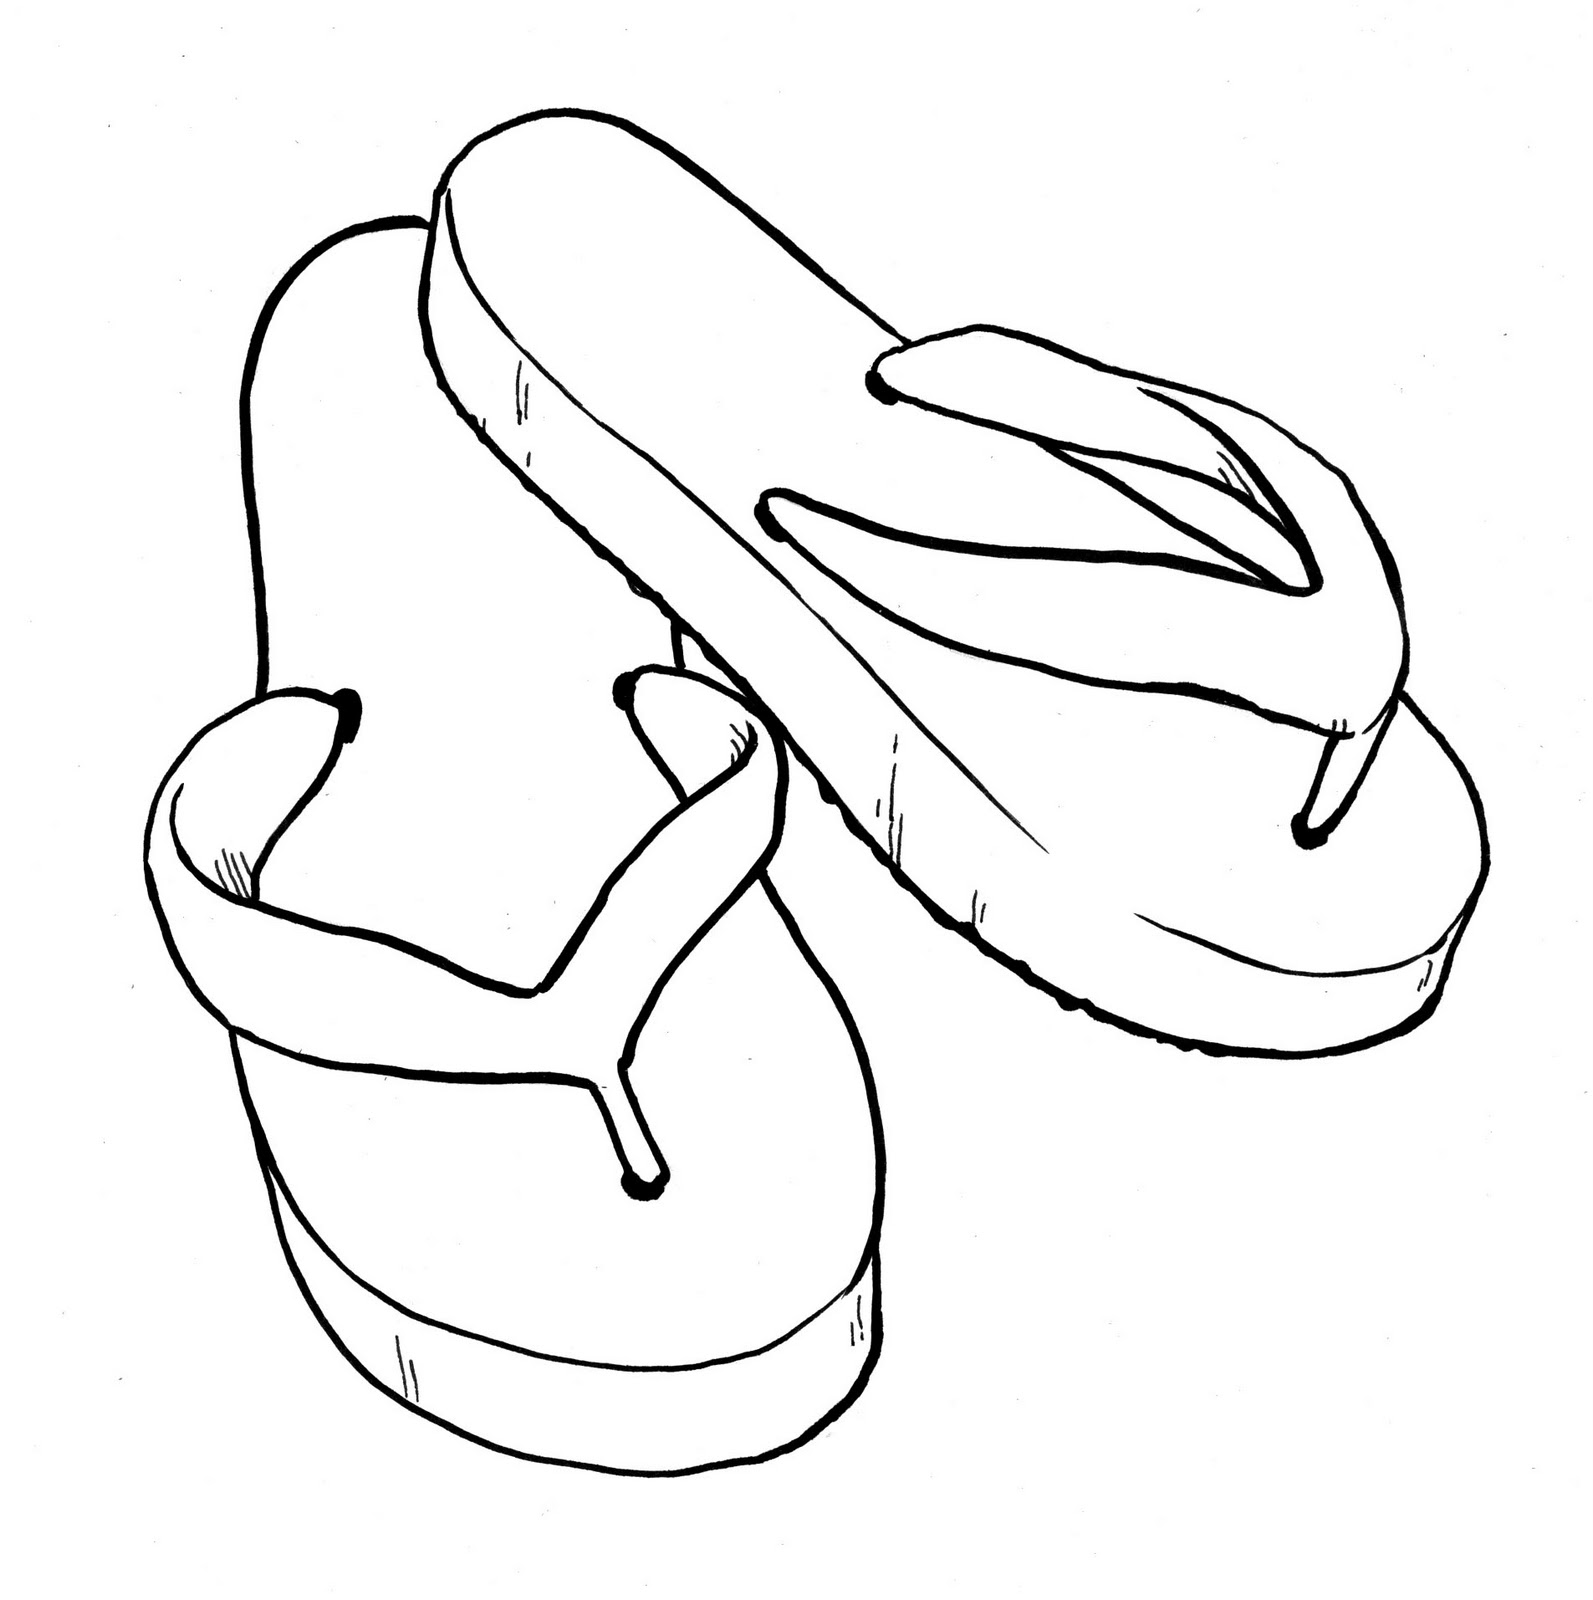 gambar sketsa sandal jepit hd